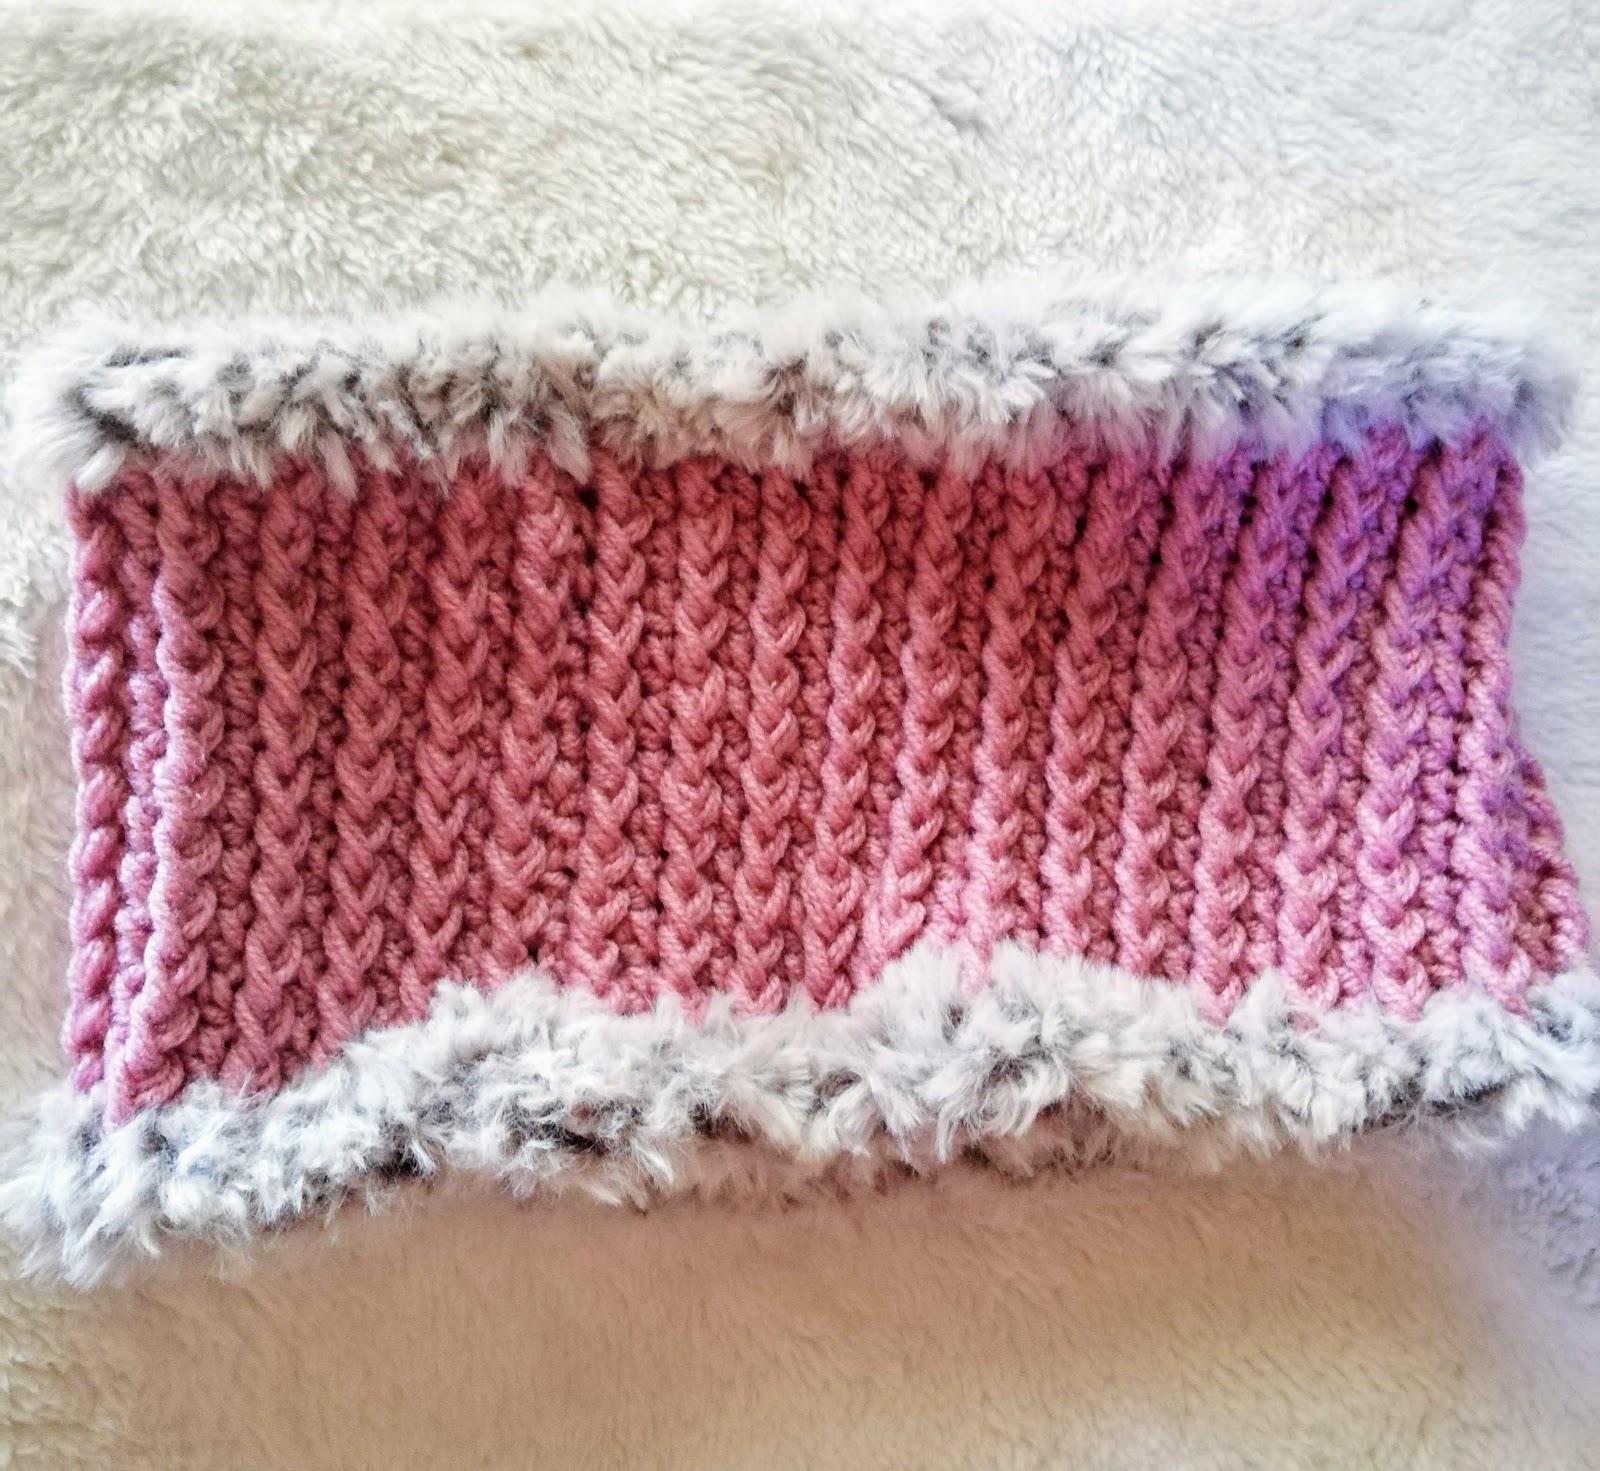 ダイソー メランジ 1玉で編むかぎ針引上げ編みのネックウォーマーの編み方 Crochet And Me かぎ針編みの編み図と編み方